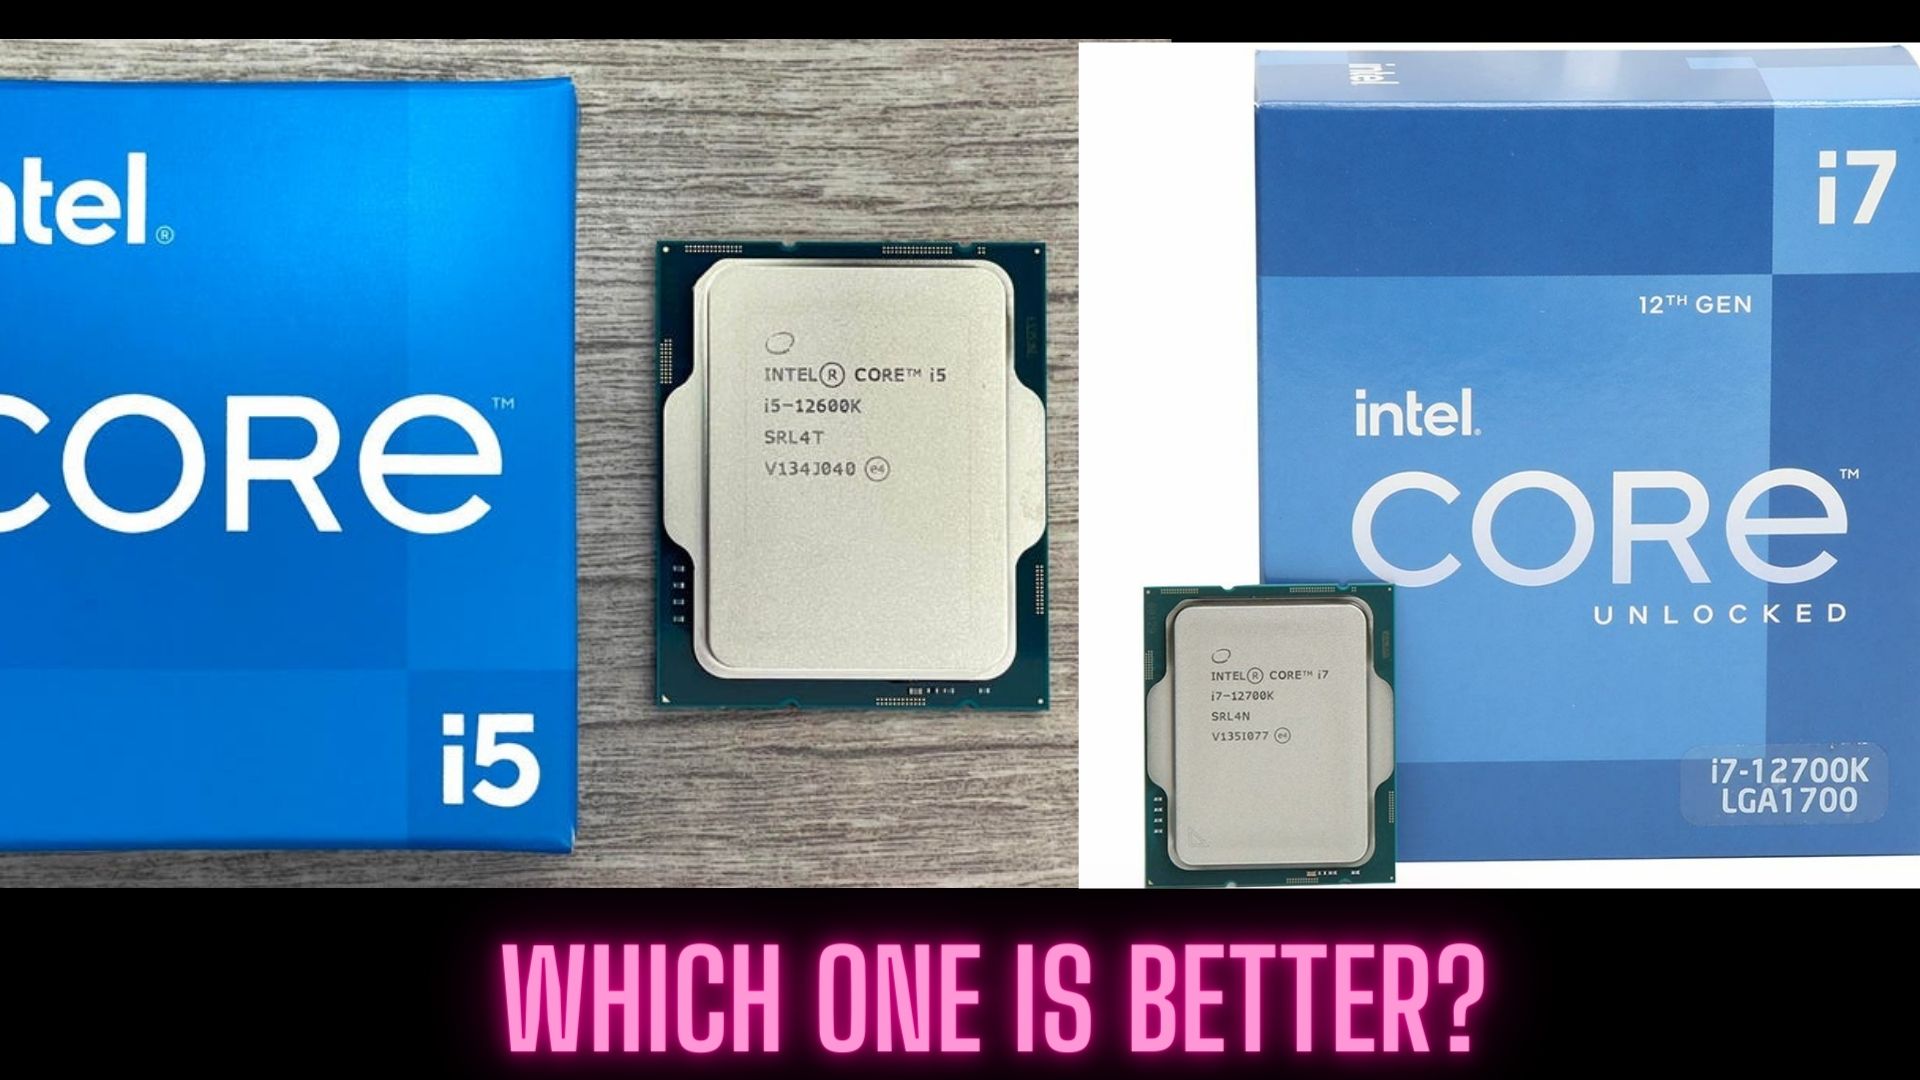 Intel Core i5-12600K Processor 3.60 GHz 10 Cores LGA 1700 SRL4T